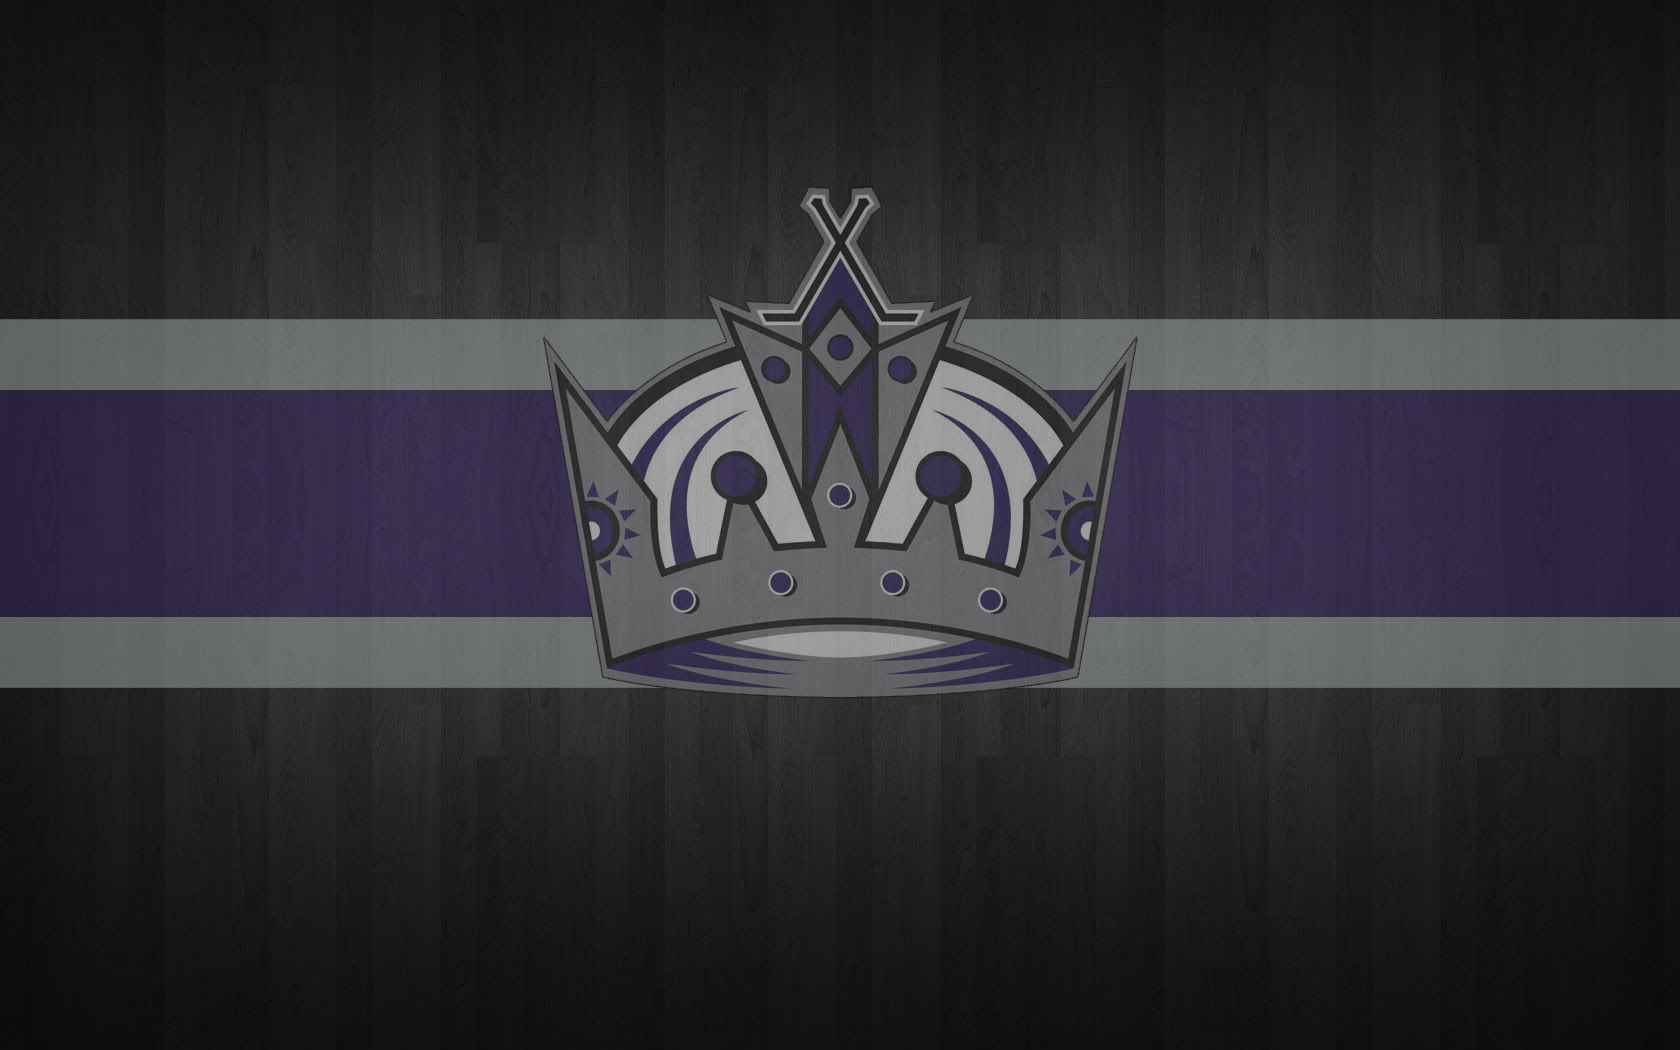 Los Angeles Kings 007 NHL, Hokej, Logo